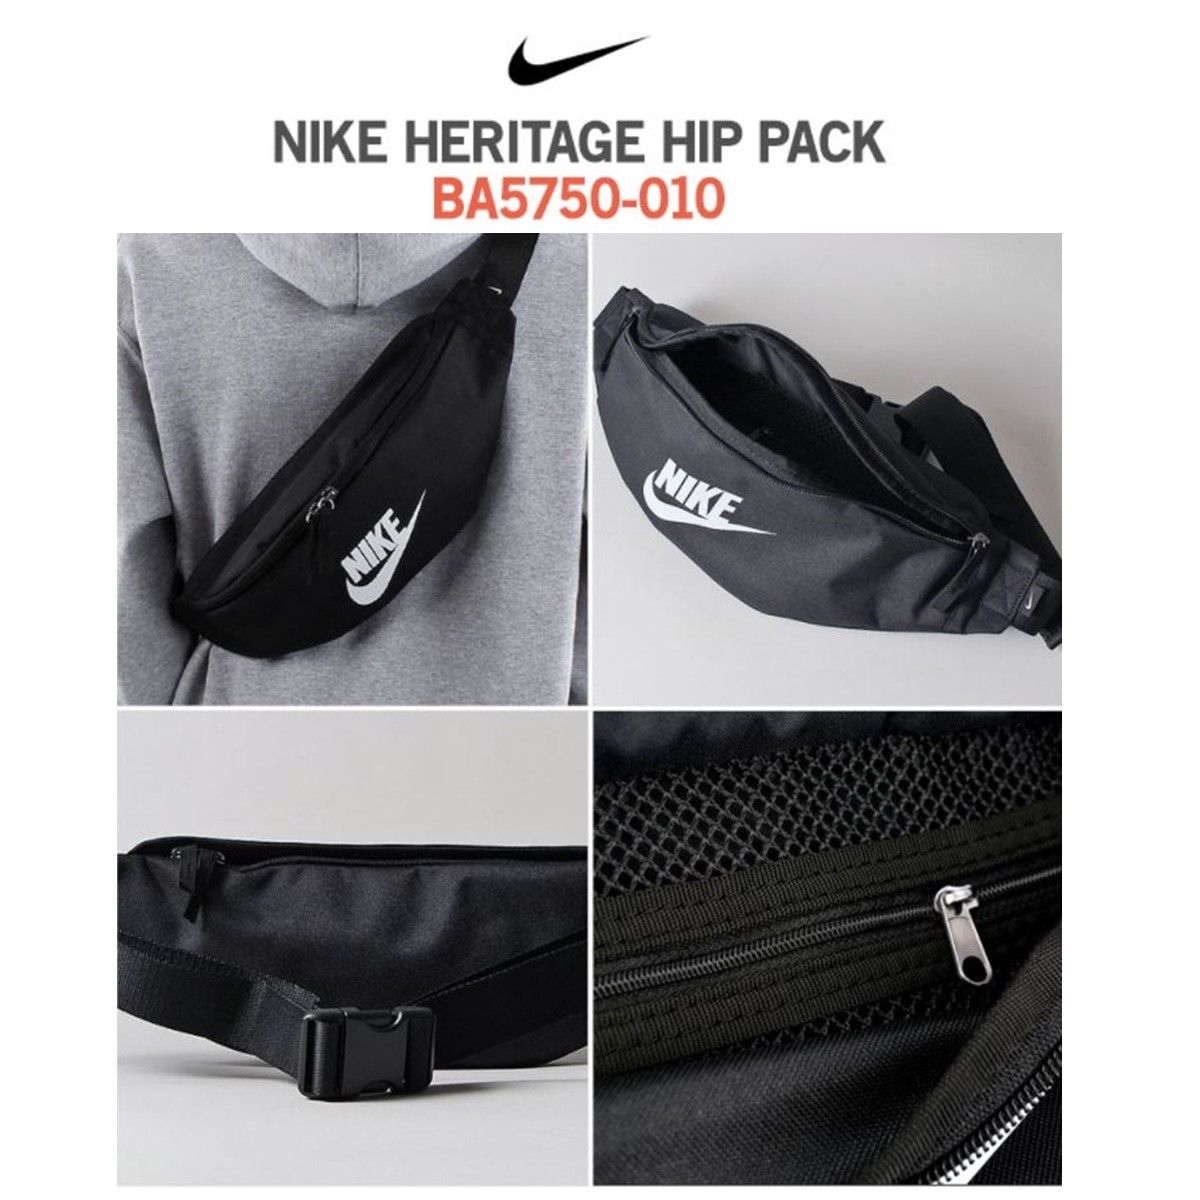 heritage hip pack